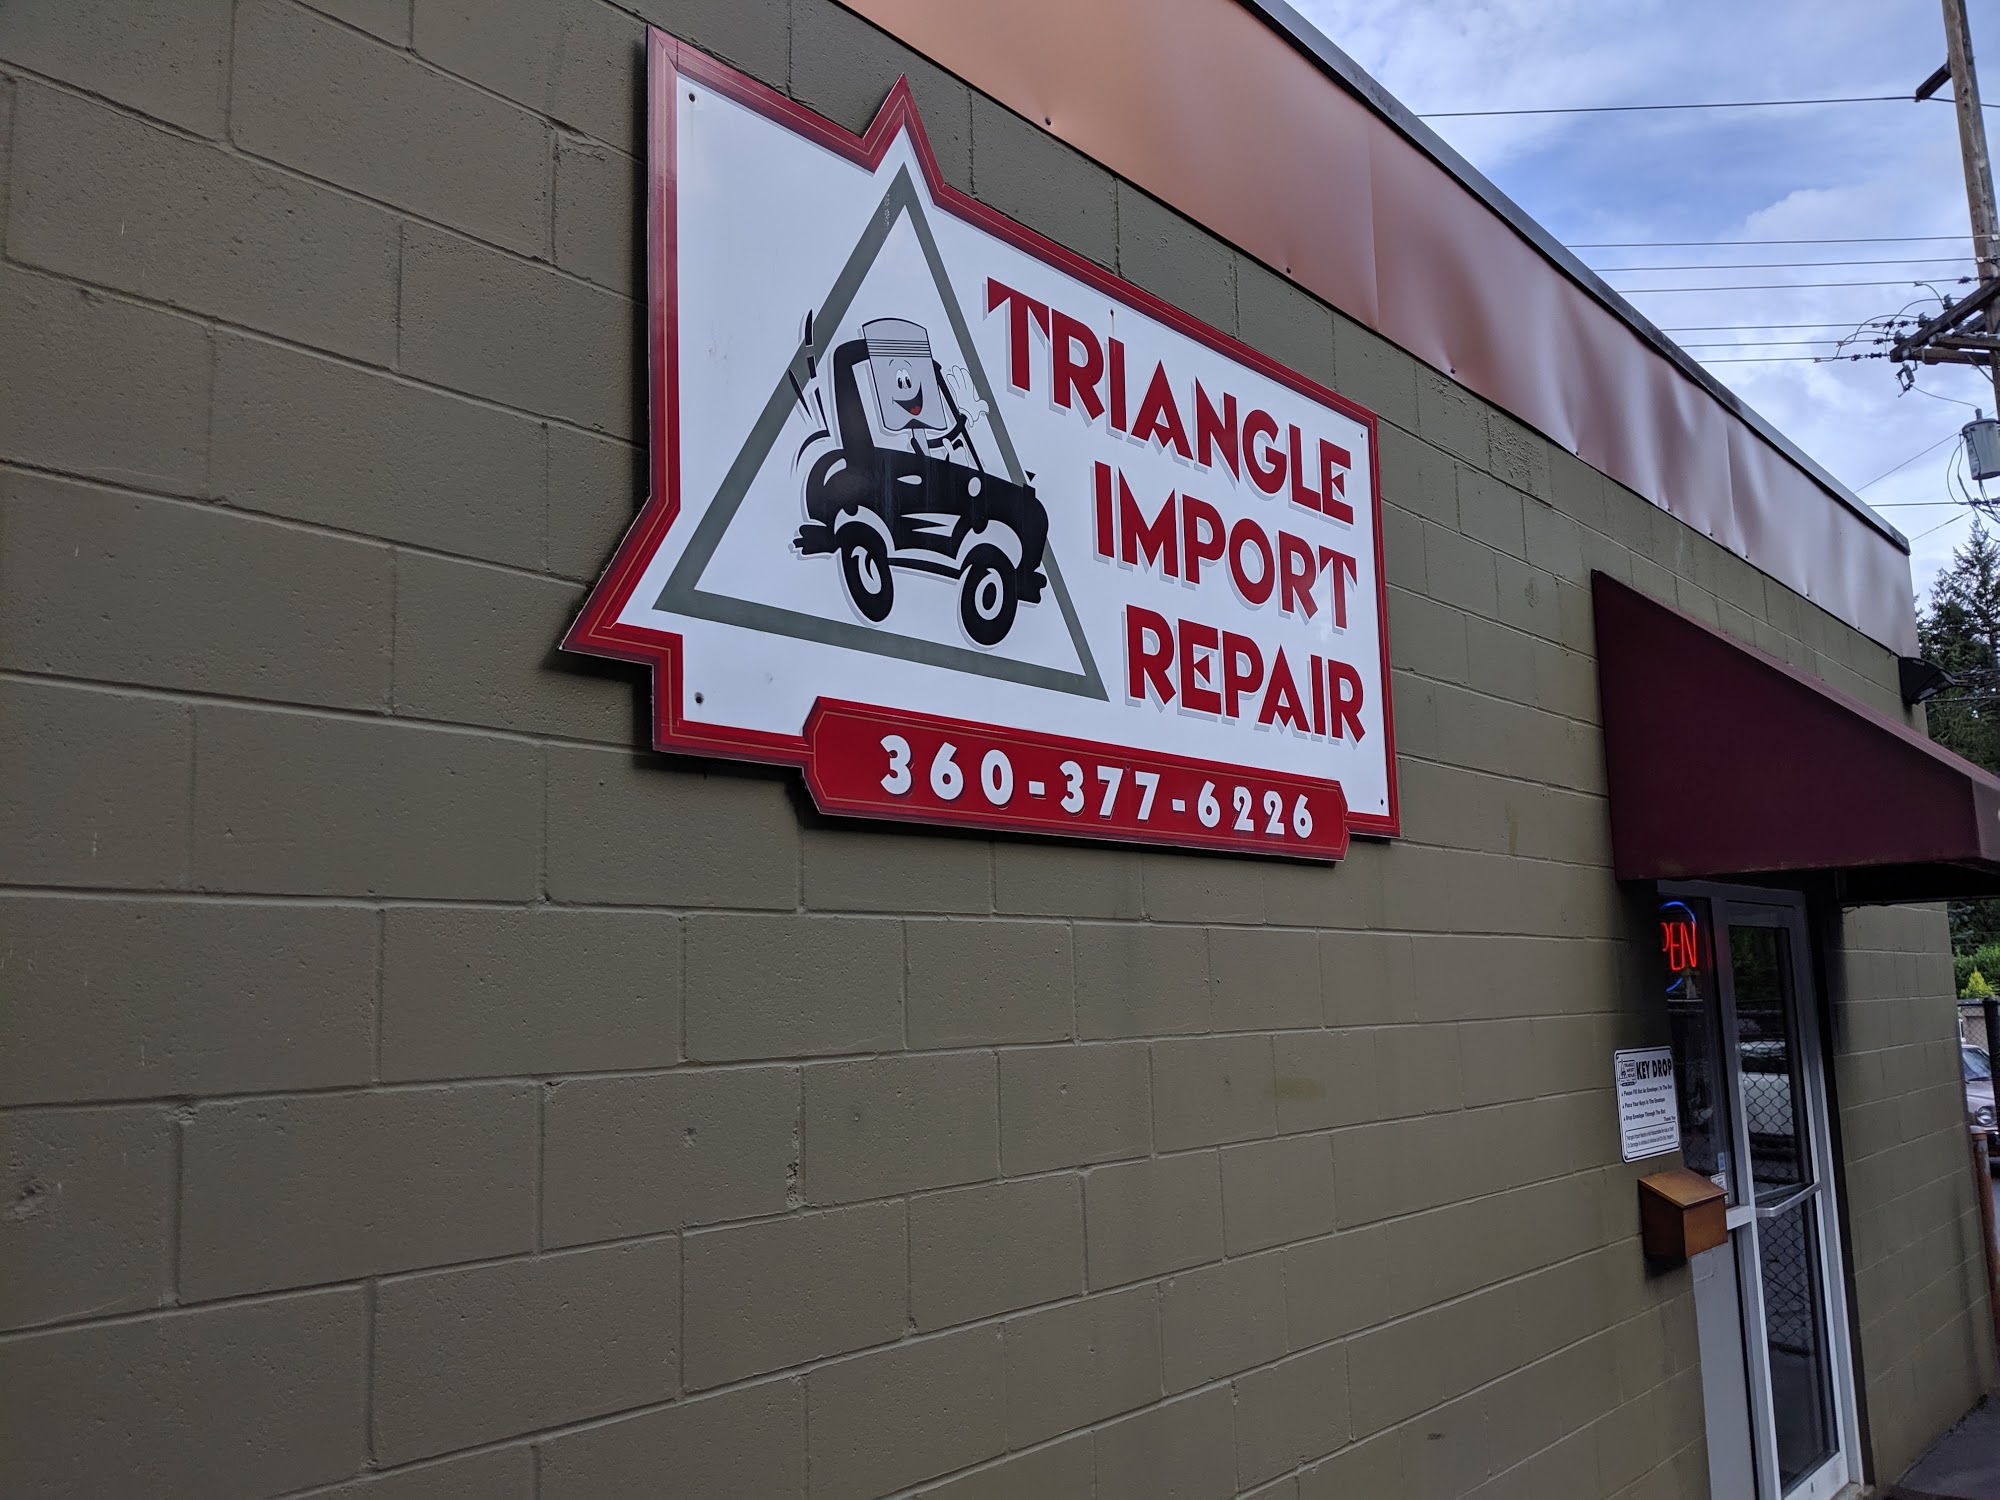 Triangle Import Repair